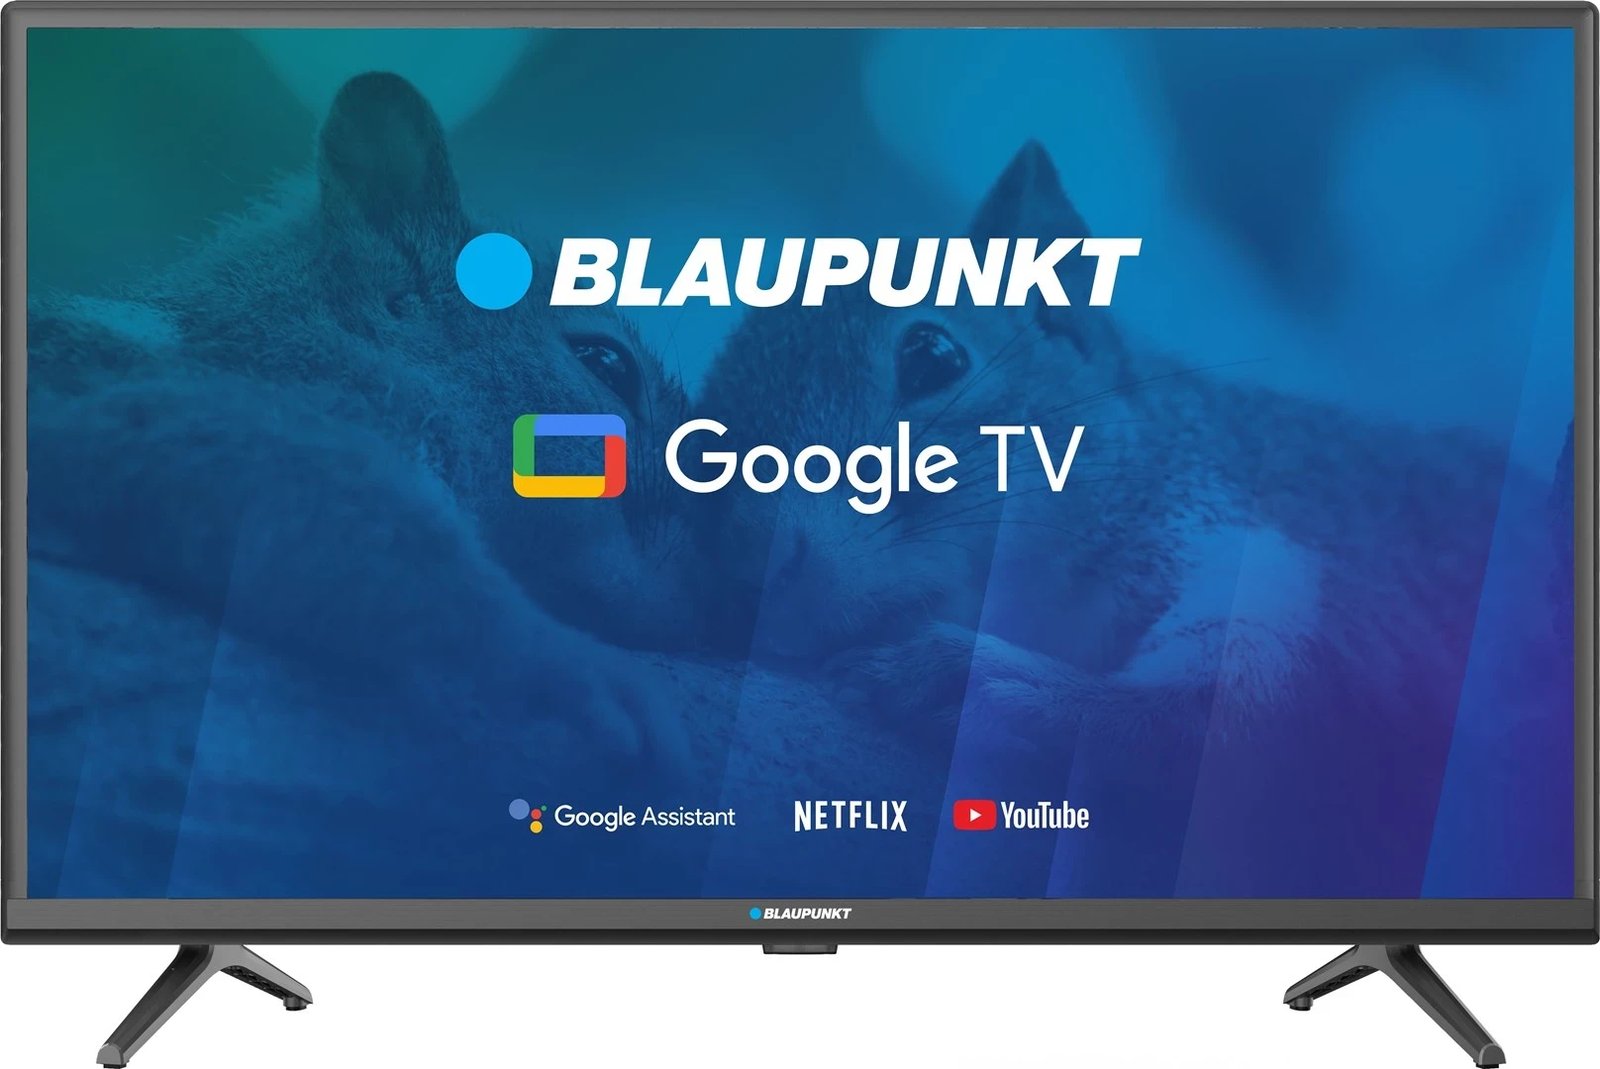 TV 32" Blaupunkt 32HBG5000S HD DLED, GoogleTV, Dolby Digital, WiFi 2,4-5GHz, BT, e zezë